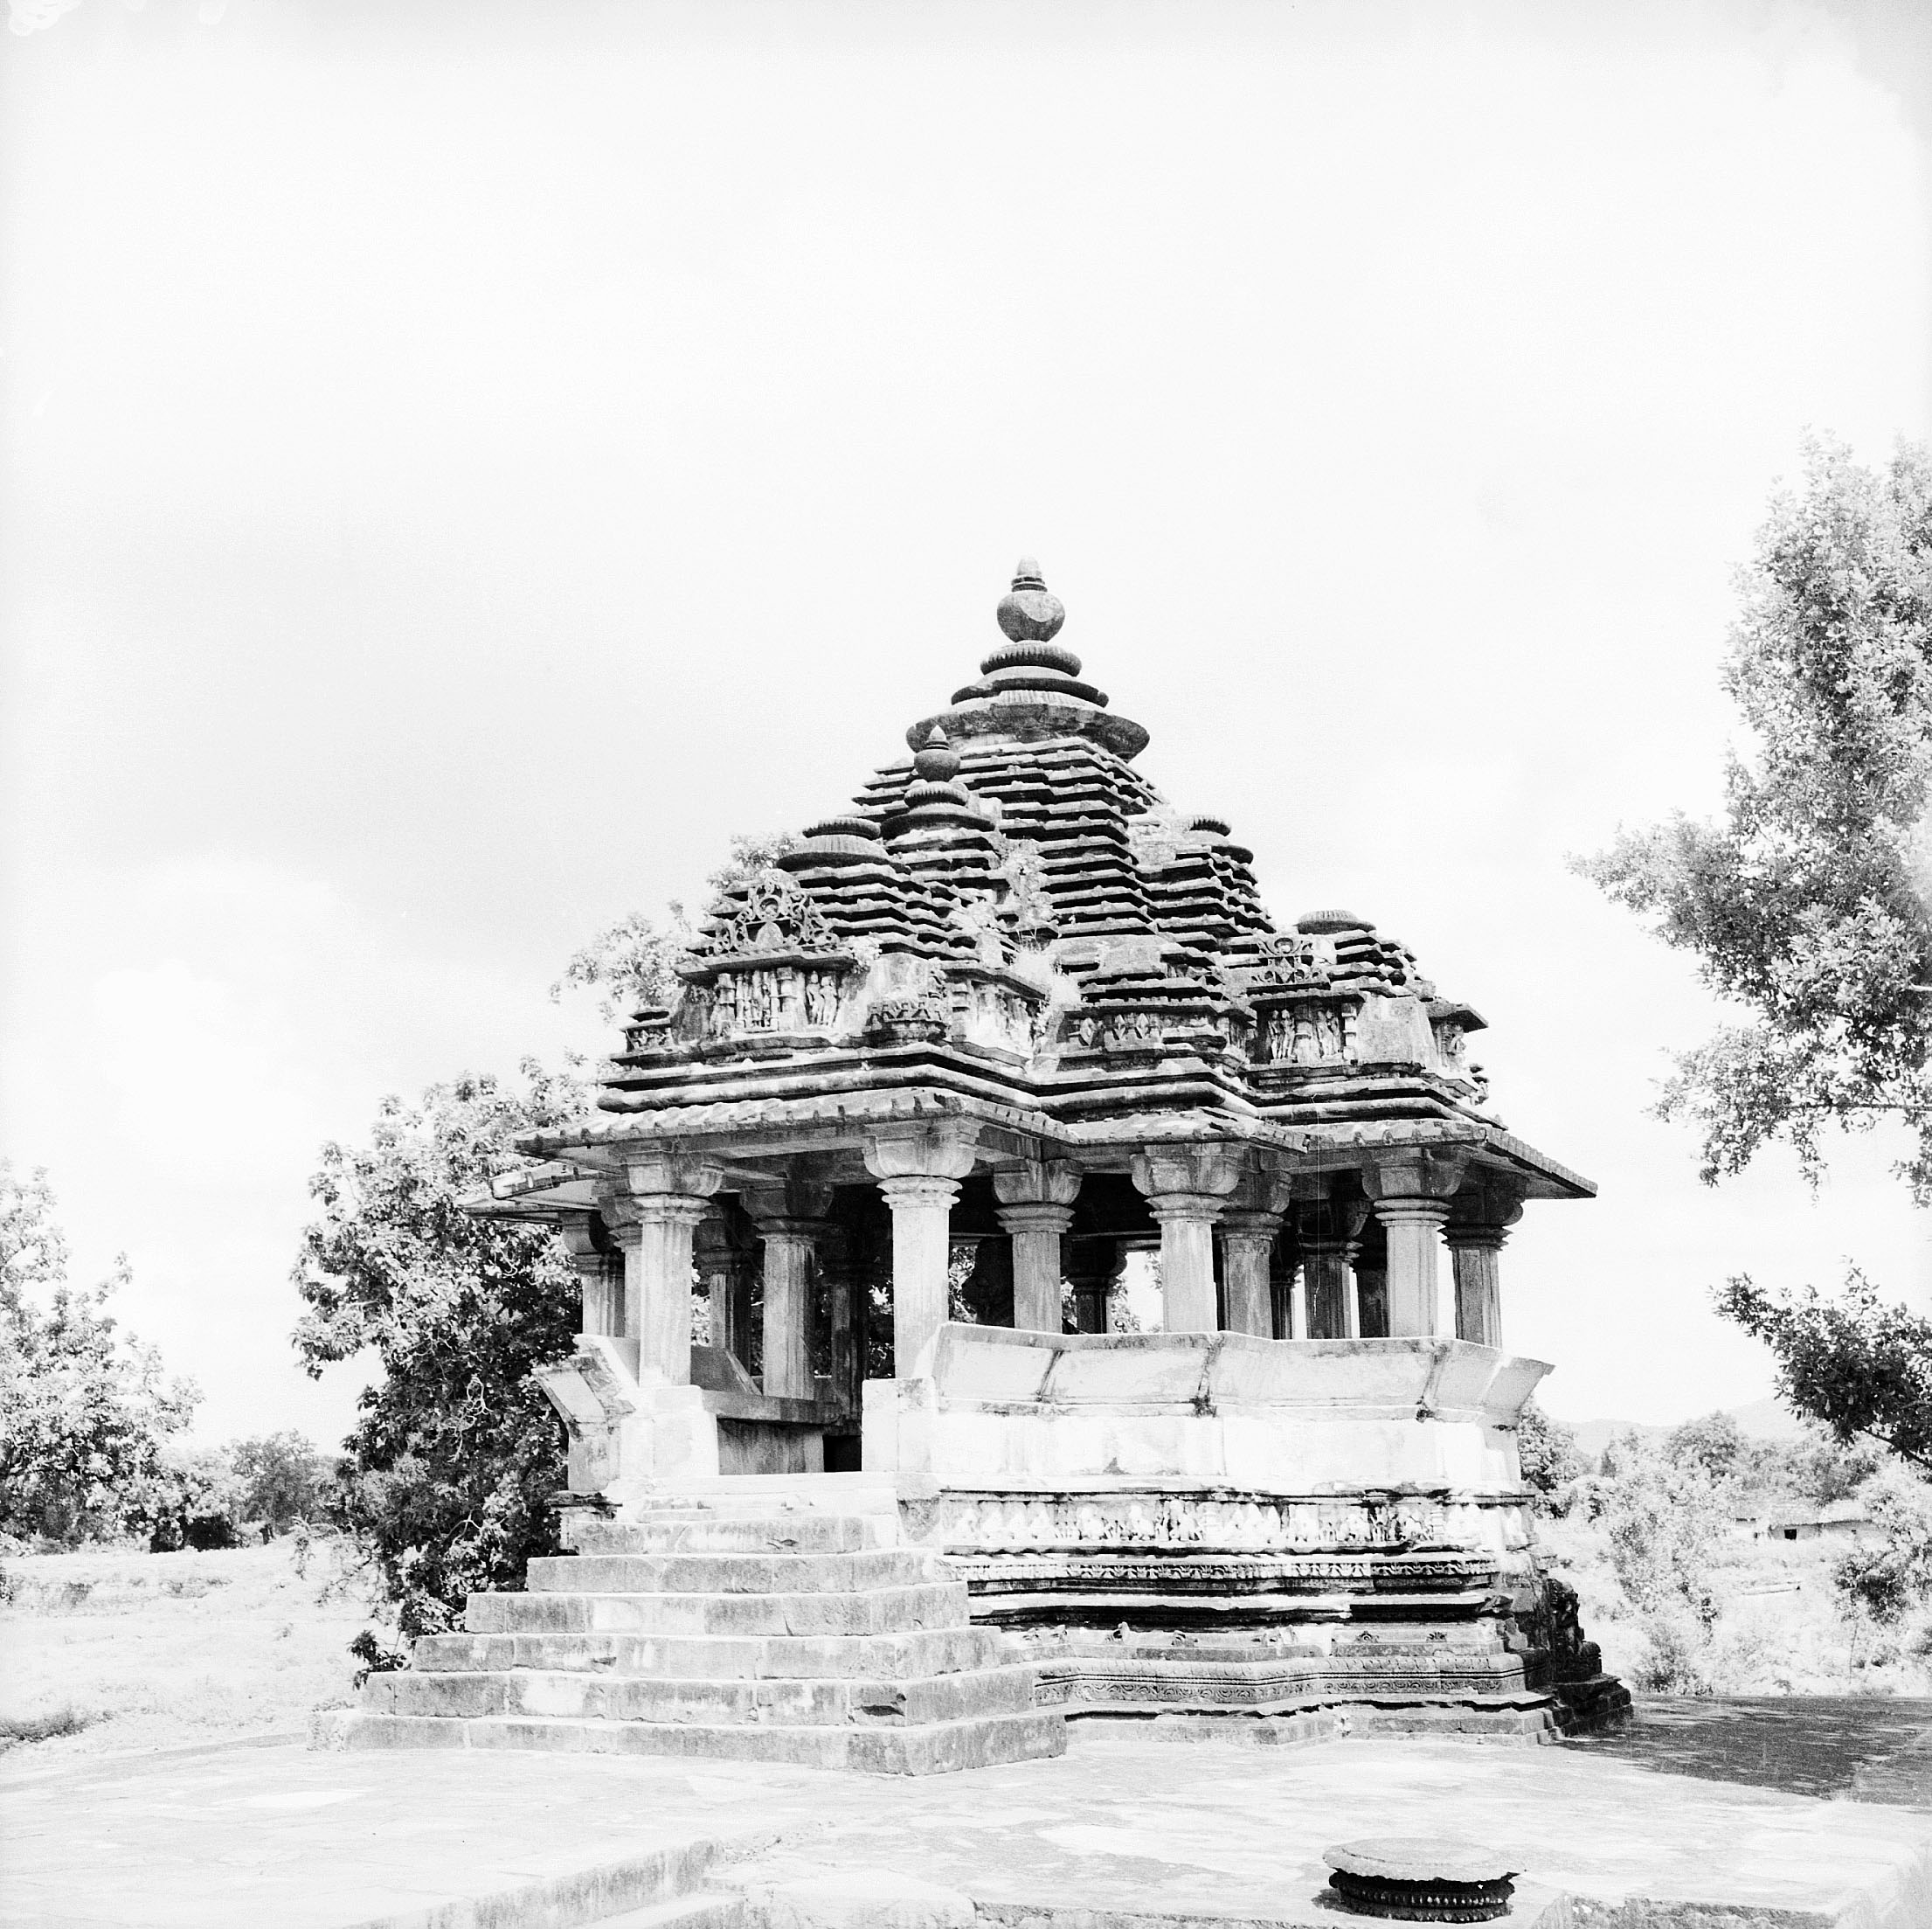 Khajuraho